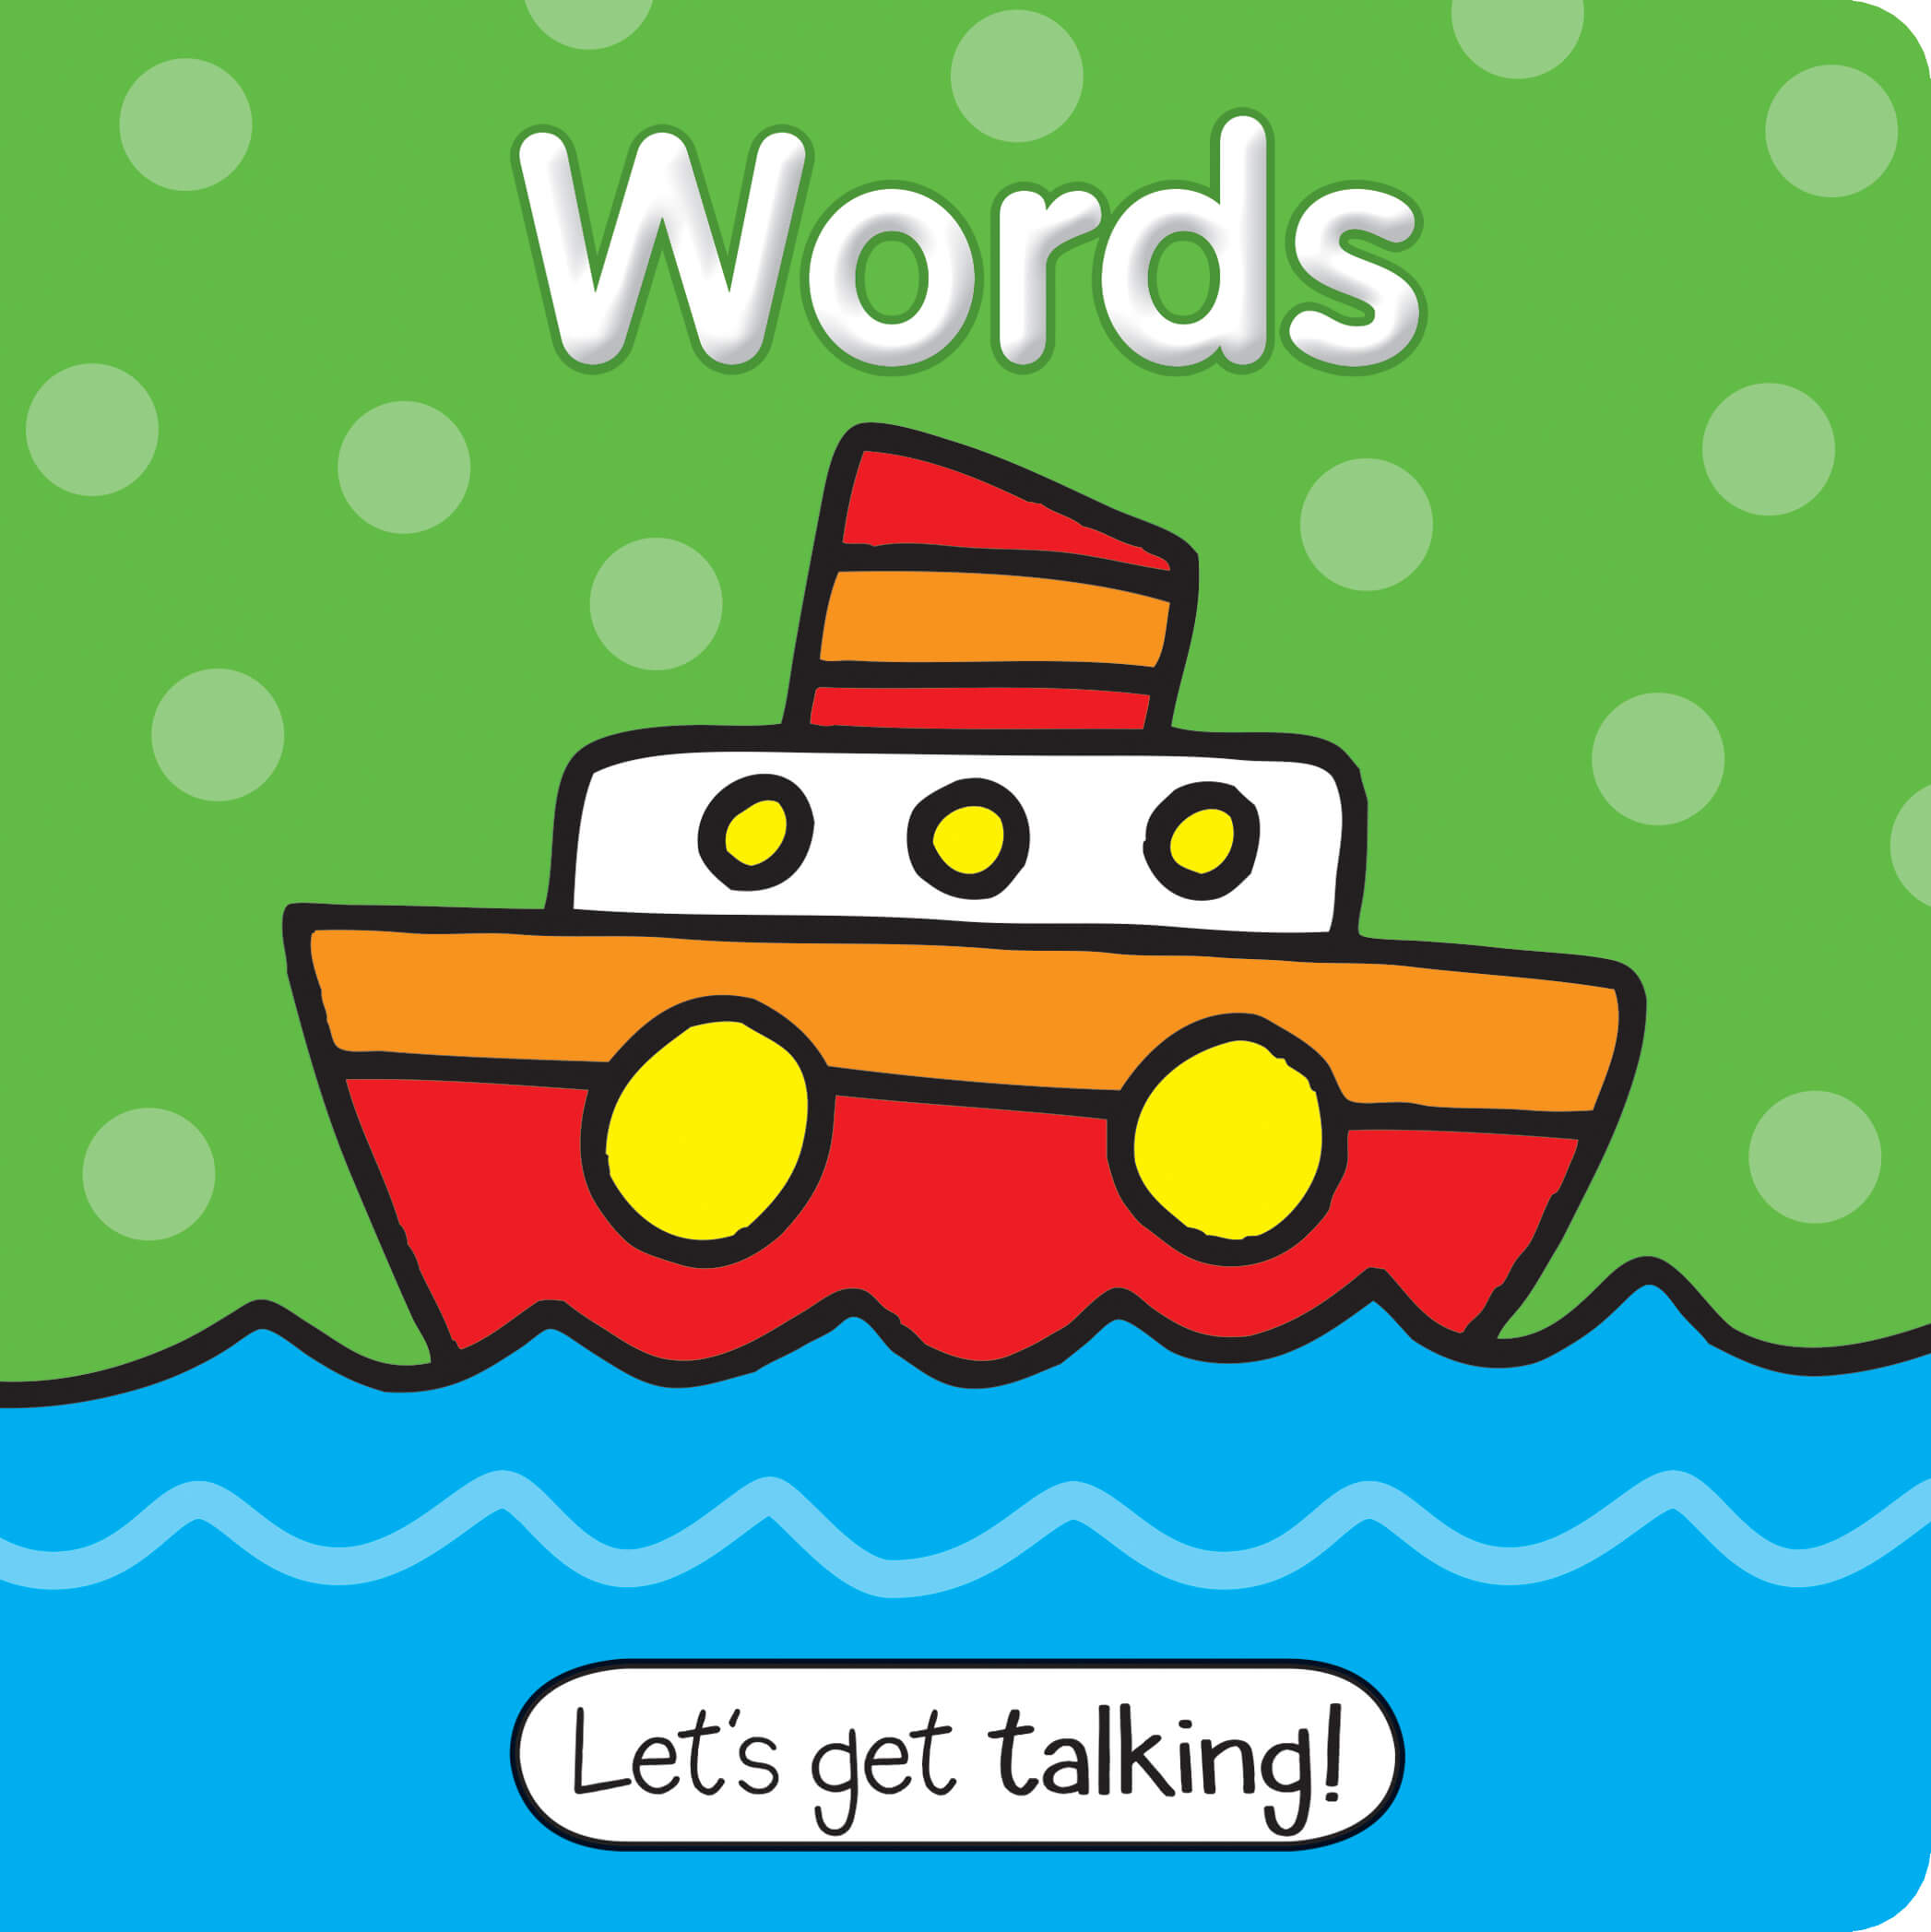 Let’s Get Talking: Words